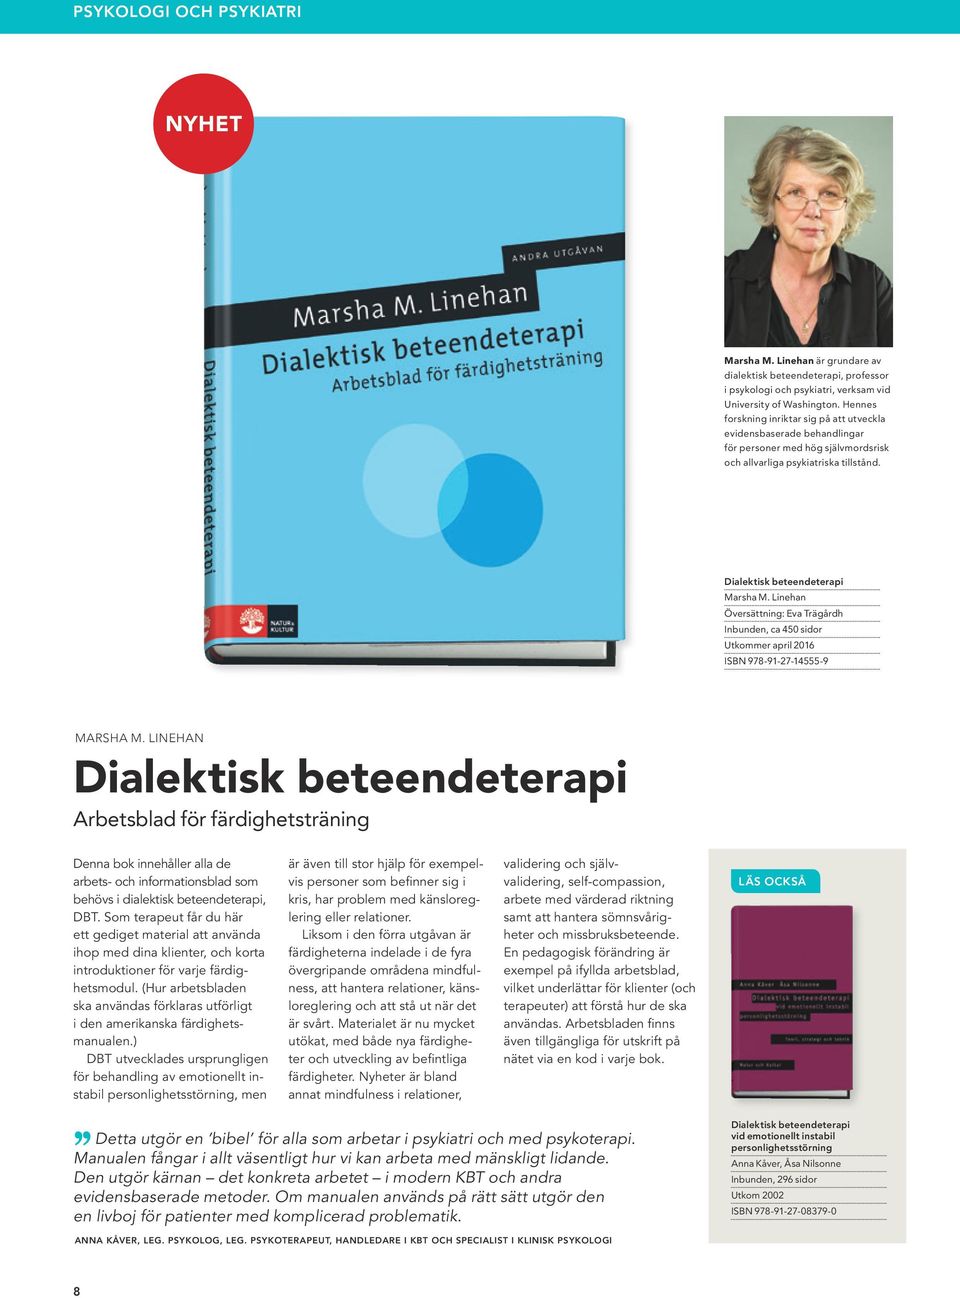 Linehan Översättning: Eva Trägårdh Inbunden, ca 450 sidor Utkommer april 2016 ISBN 978-91-27-14555-9 MARSHA M.